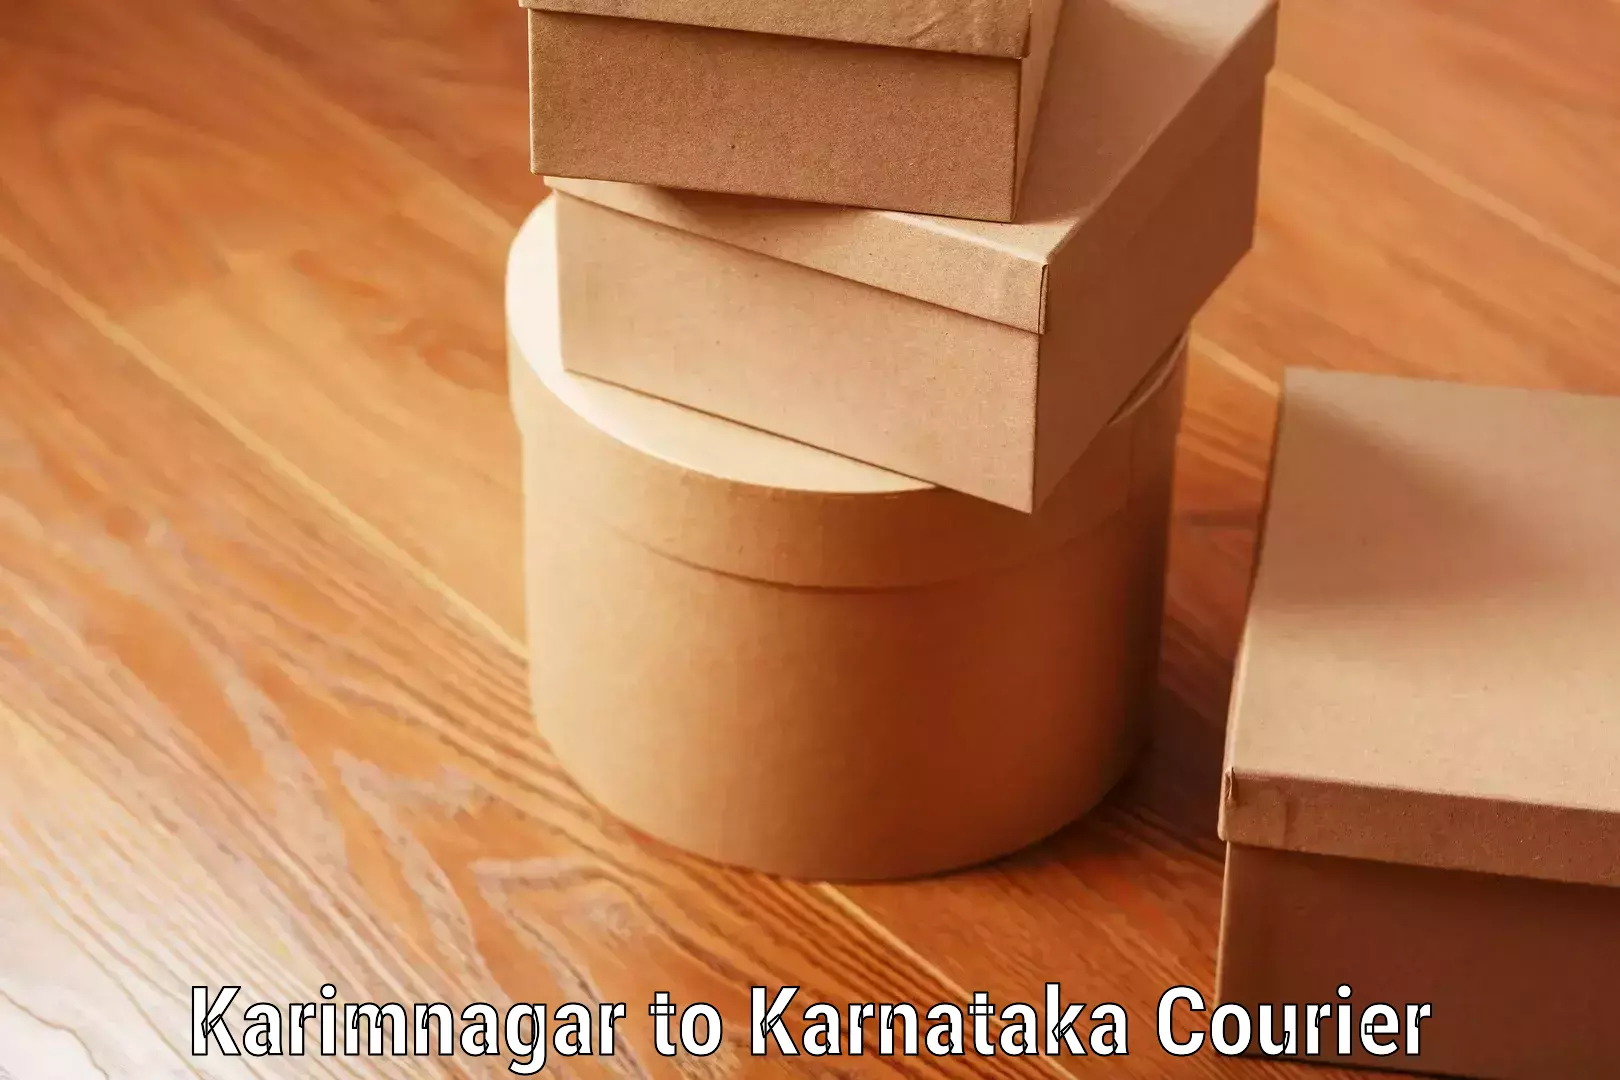 Baggage transport scheduler Karimnagar to Karnataka